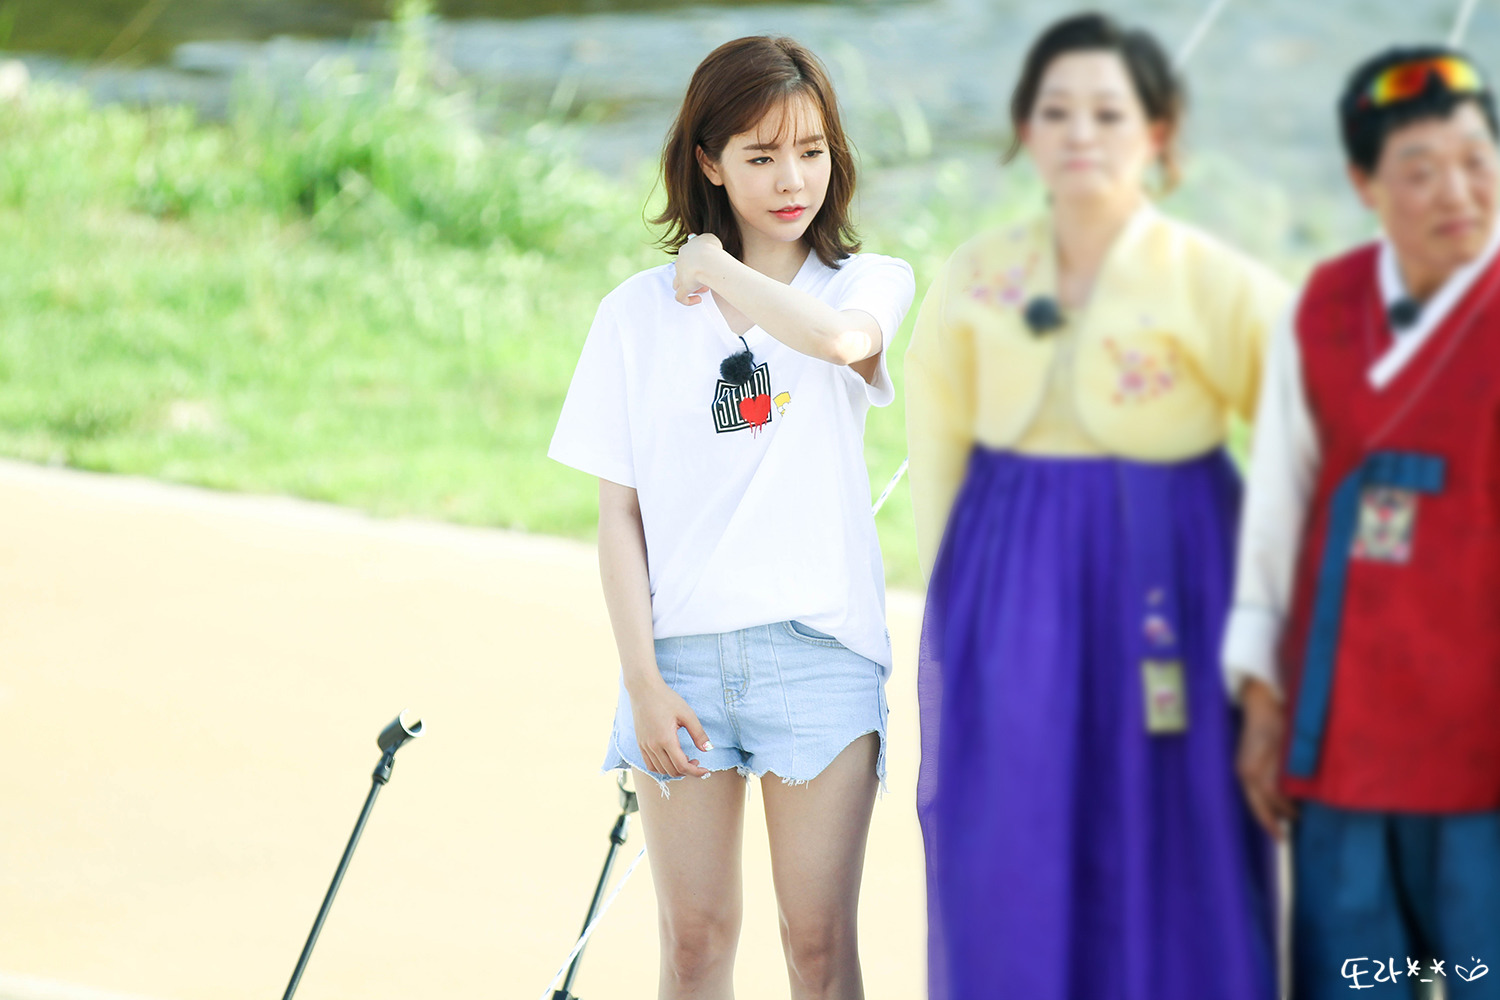 [PIC][16-05-2016]Sunny ghi hình cho chương trình "재래시장 살리자" của kênh JTBC tại Busan vào hôm nay - Page 12 270C10415950EEC21C2203